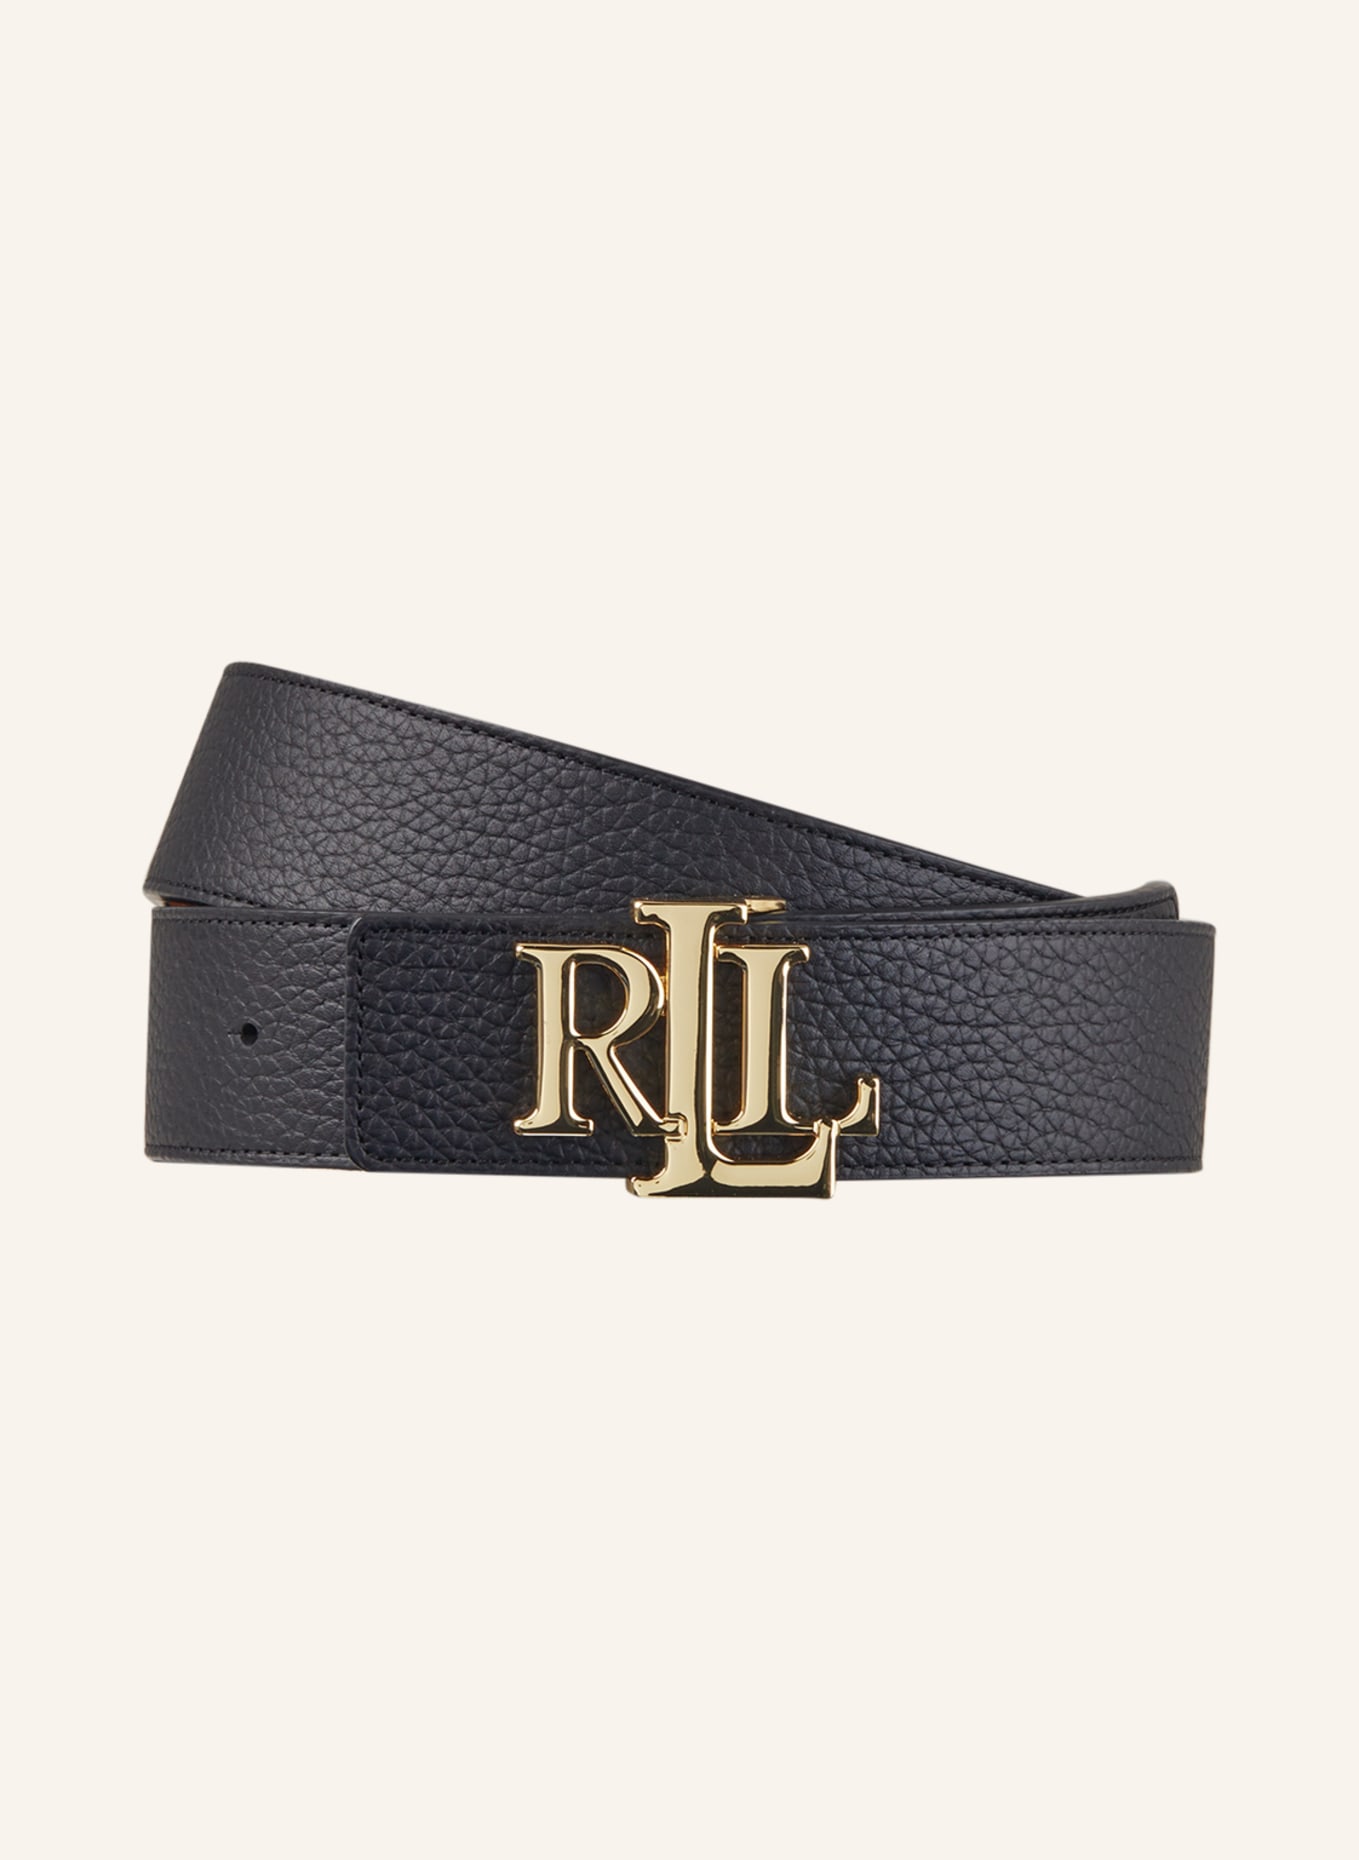 LAUREN RALPH LAUREN Reversible leather belt, Color: BLACK (Image 1)